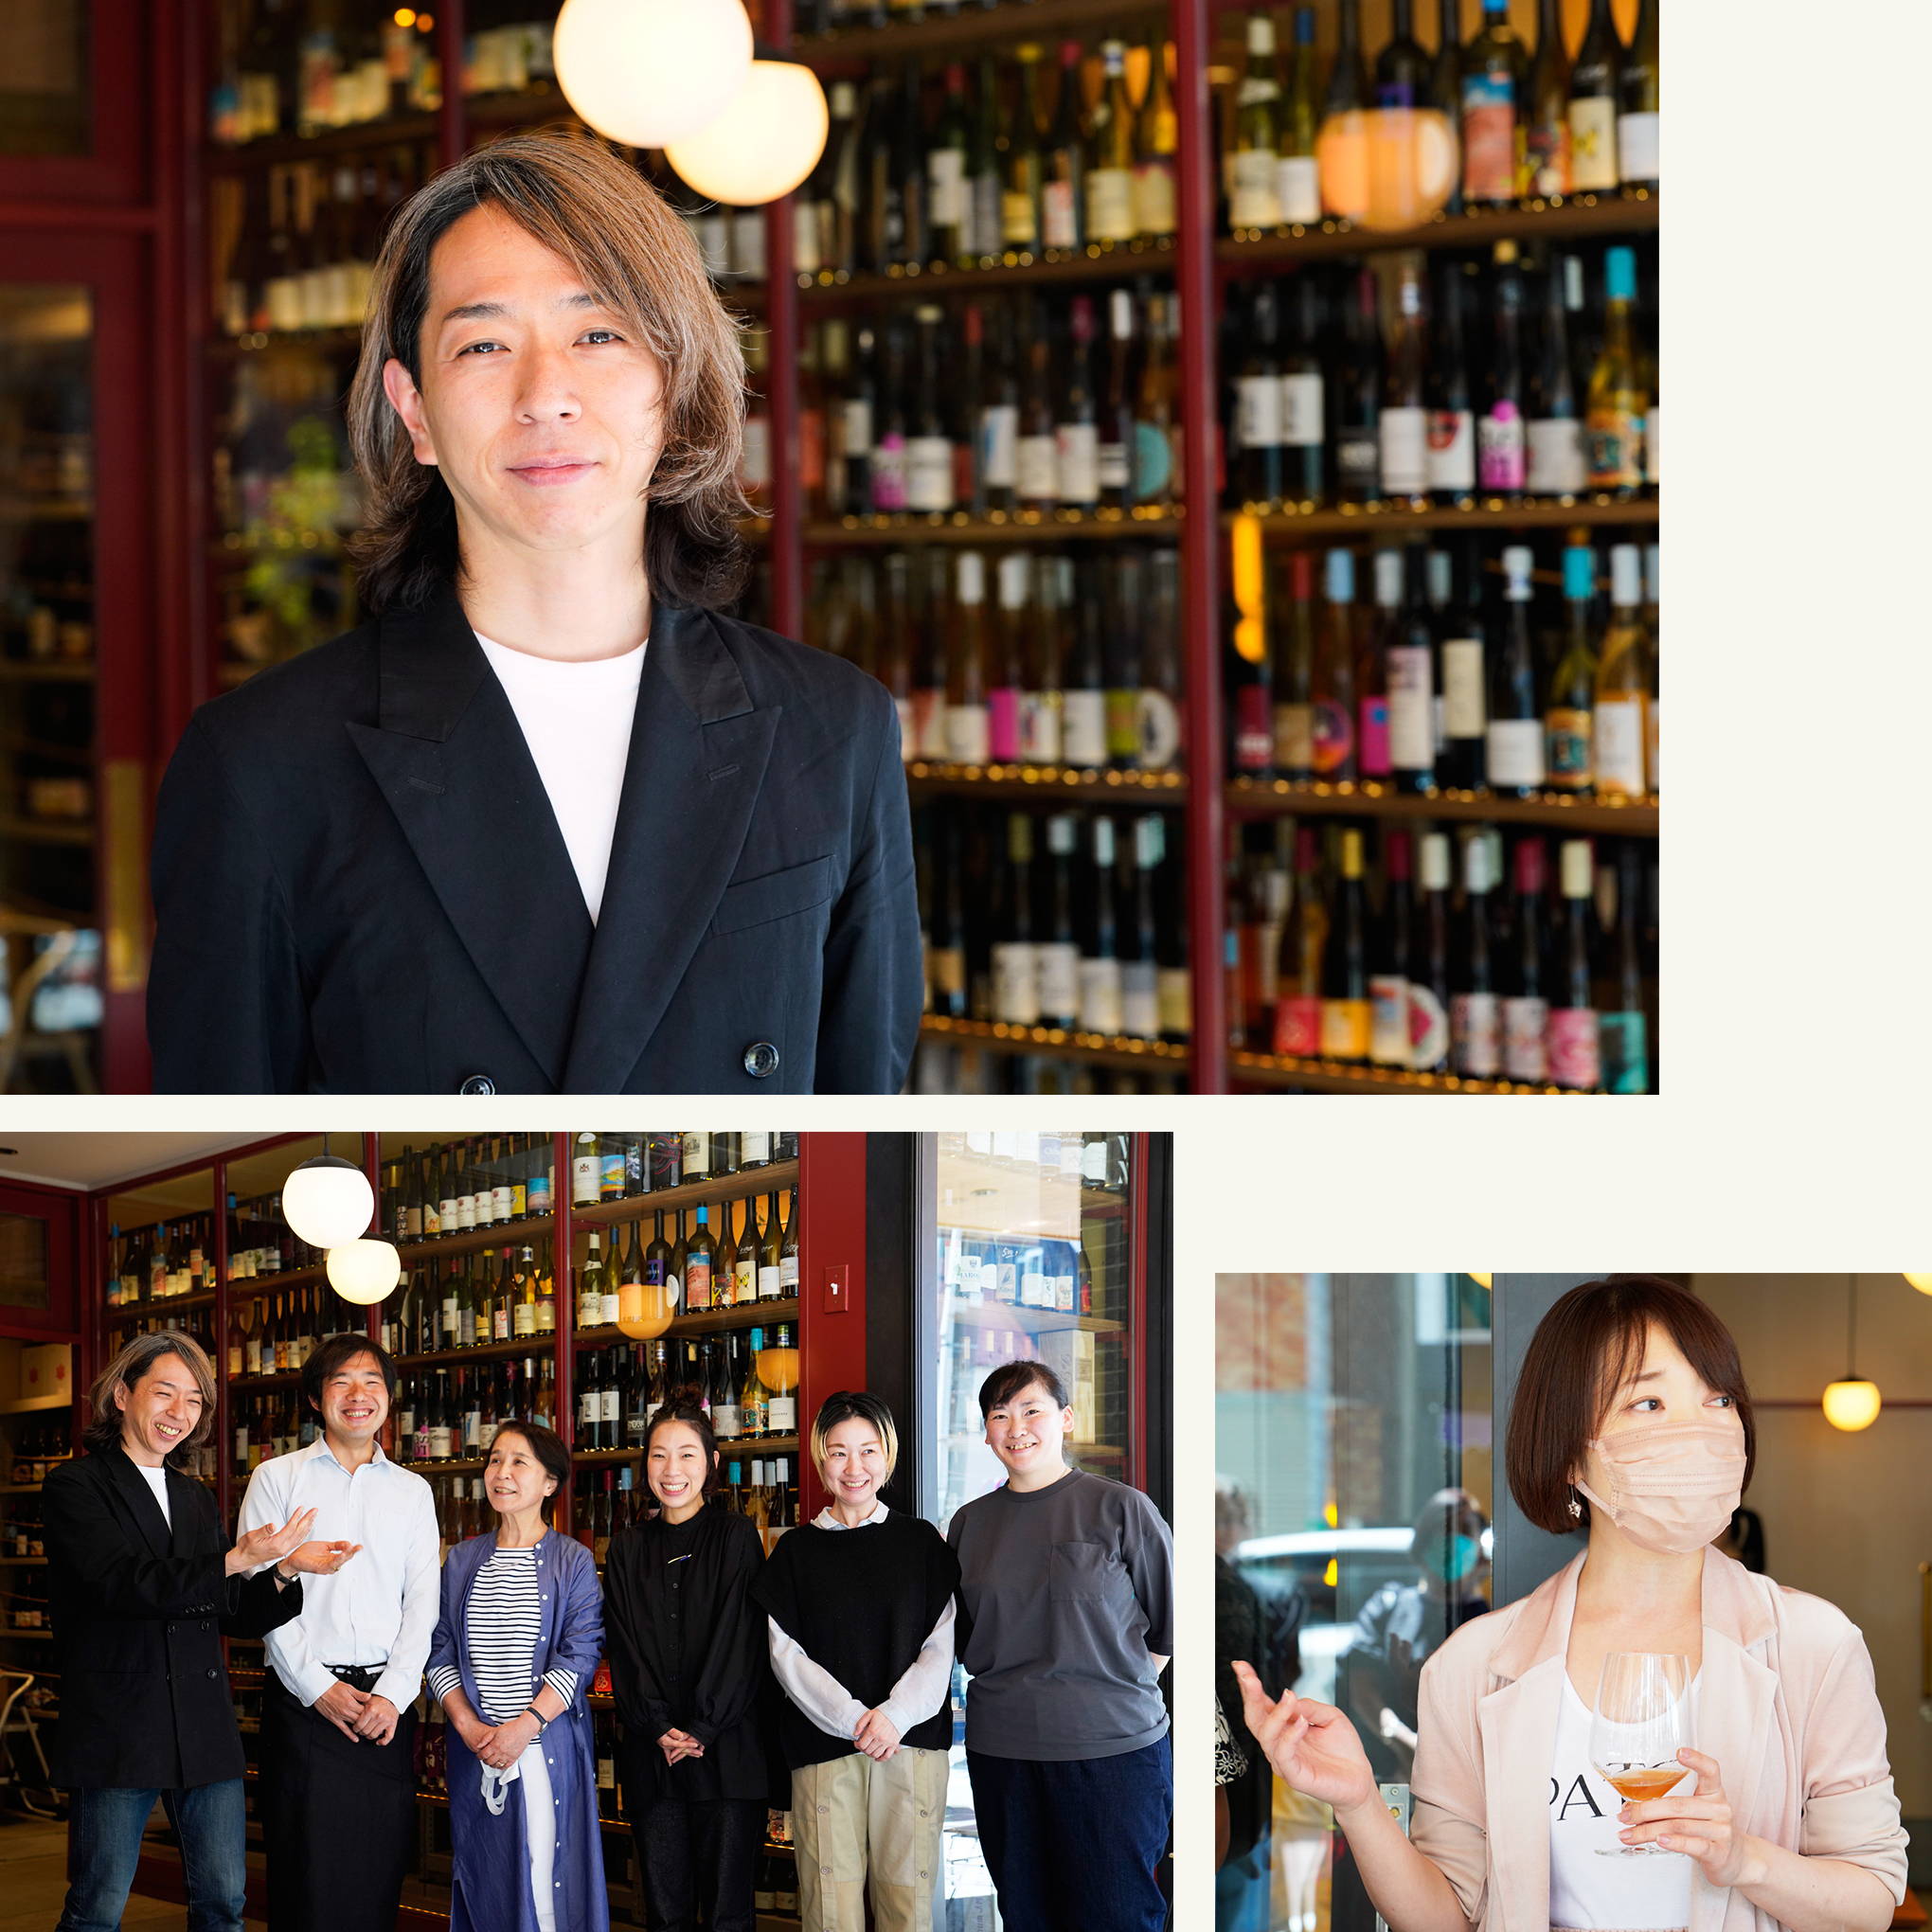 『ウィルトスワイン自由が丘』の中尾有さんがモデレーター。日本ワインを知り尽くす中尾さんと、wa-syuバイヤー・菊地が参加者をお出迎え。